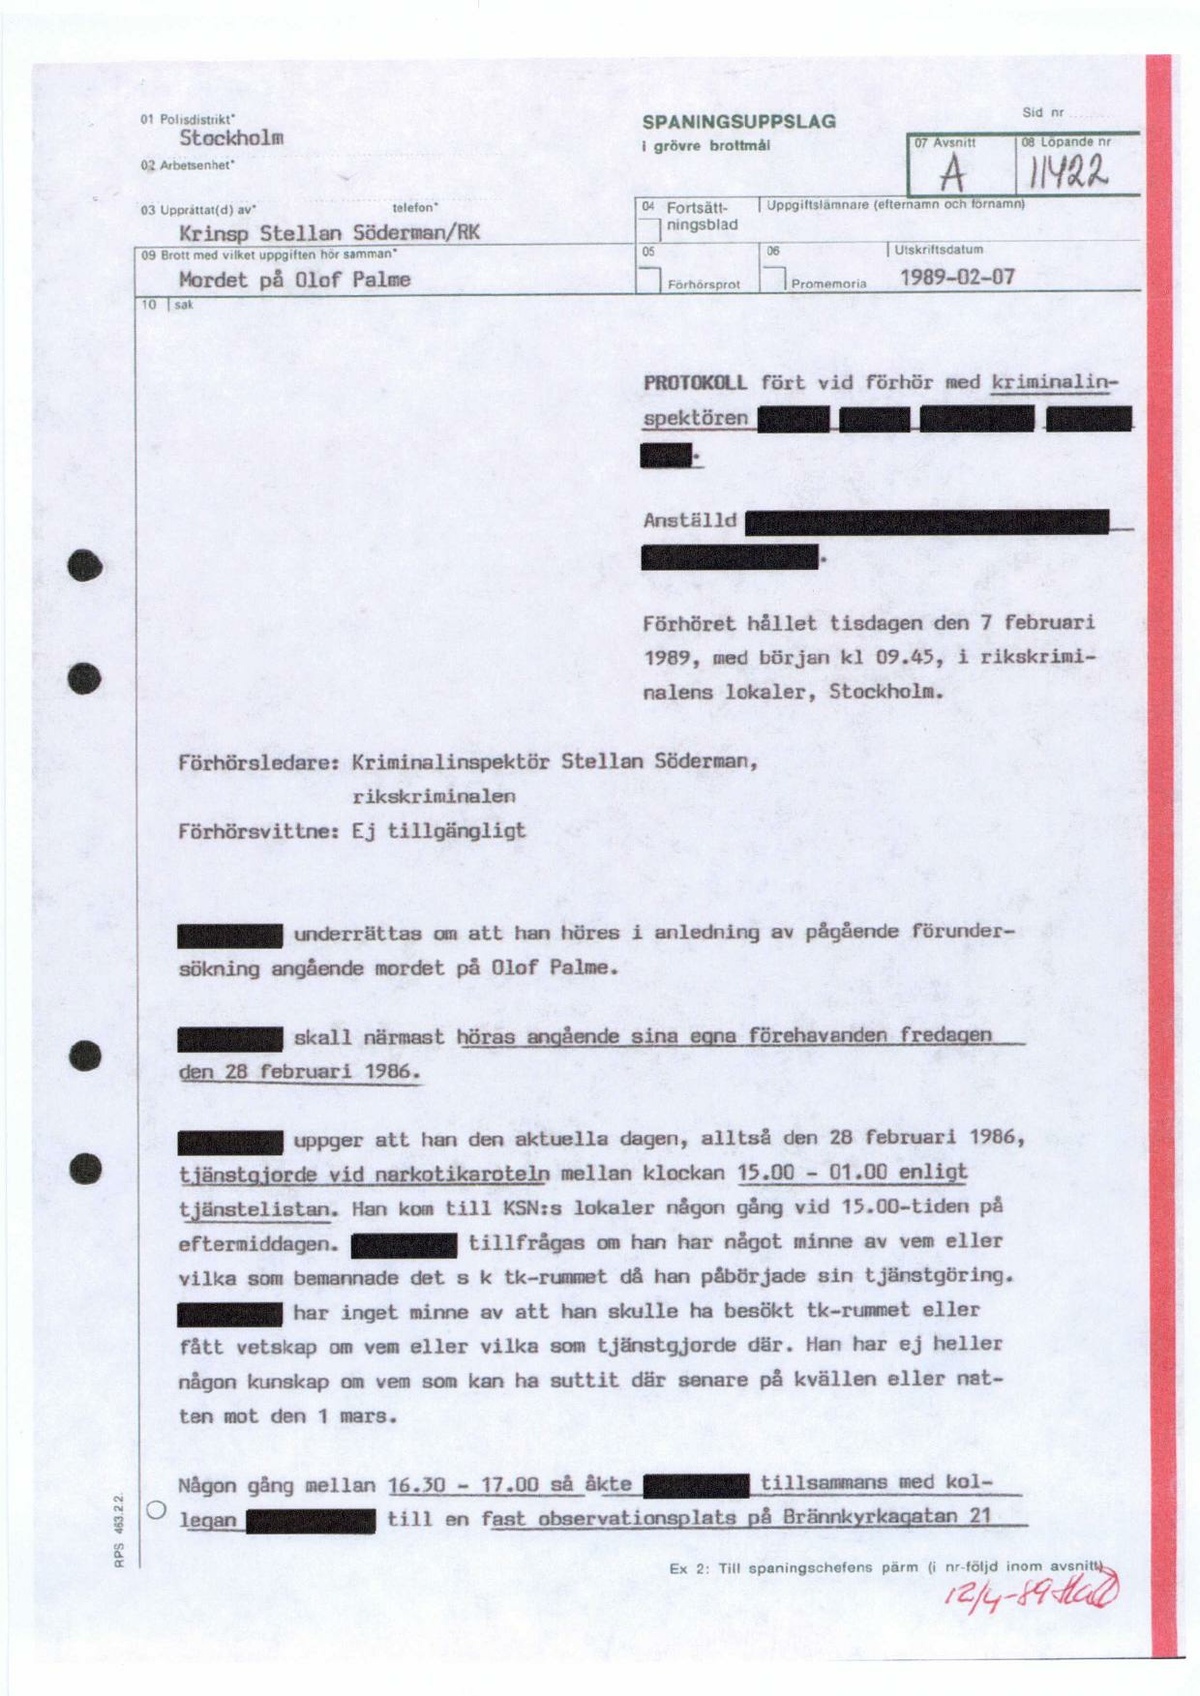 Pol-1989-02-07 A11422-00 Förhör-narkotikaspanare-Robert-Andersson.pdf